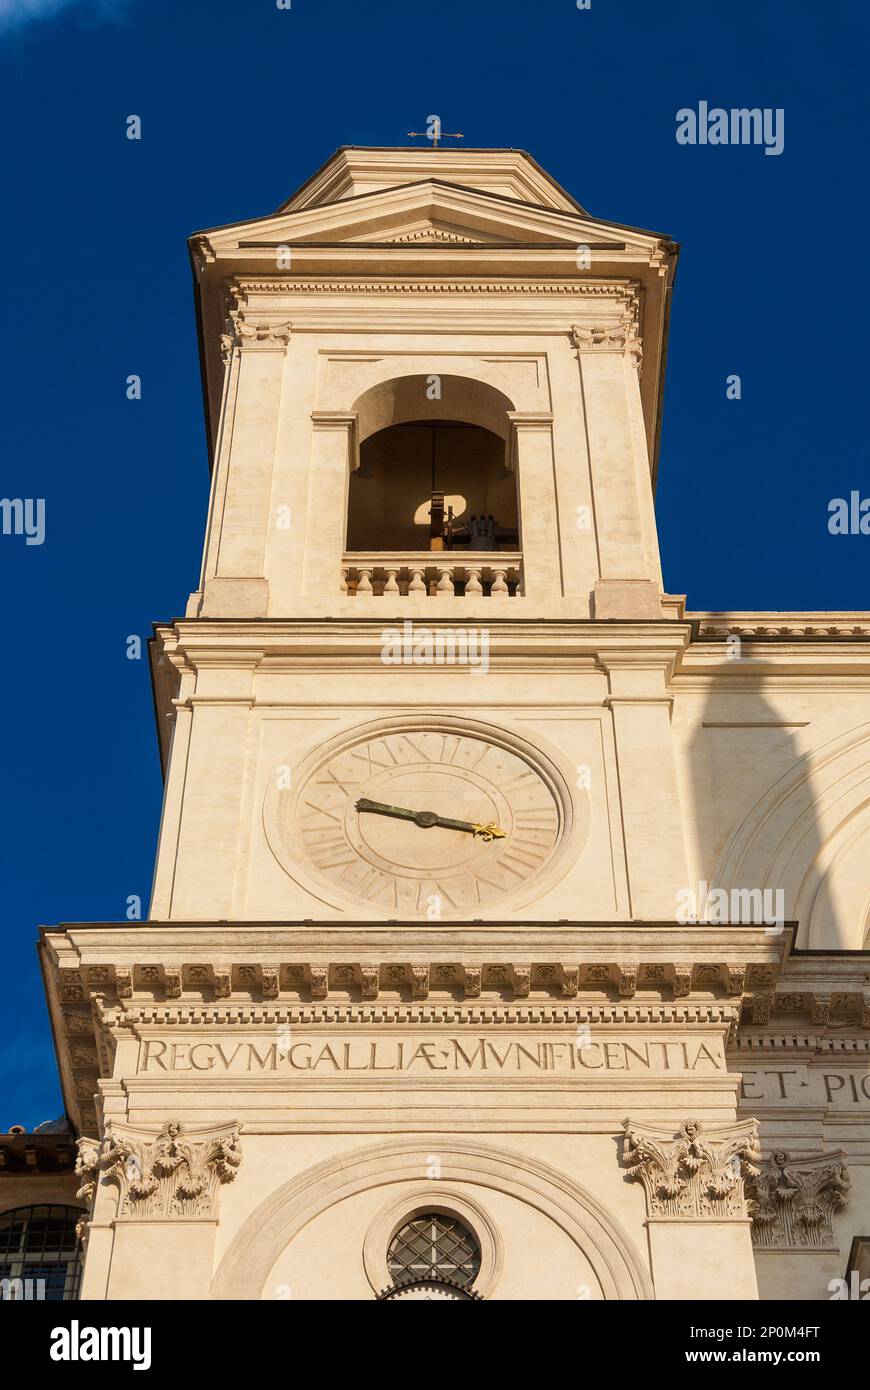 Religiöse Architektur in Rom. Zweier Glockenturm mit Uhr der Renaissancekirche Trinità dei Monti, auf der berühmten Spanischen Treppe Stockfoto